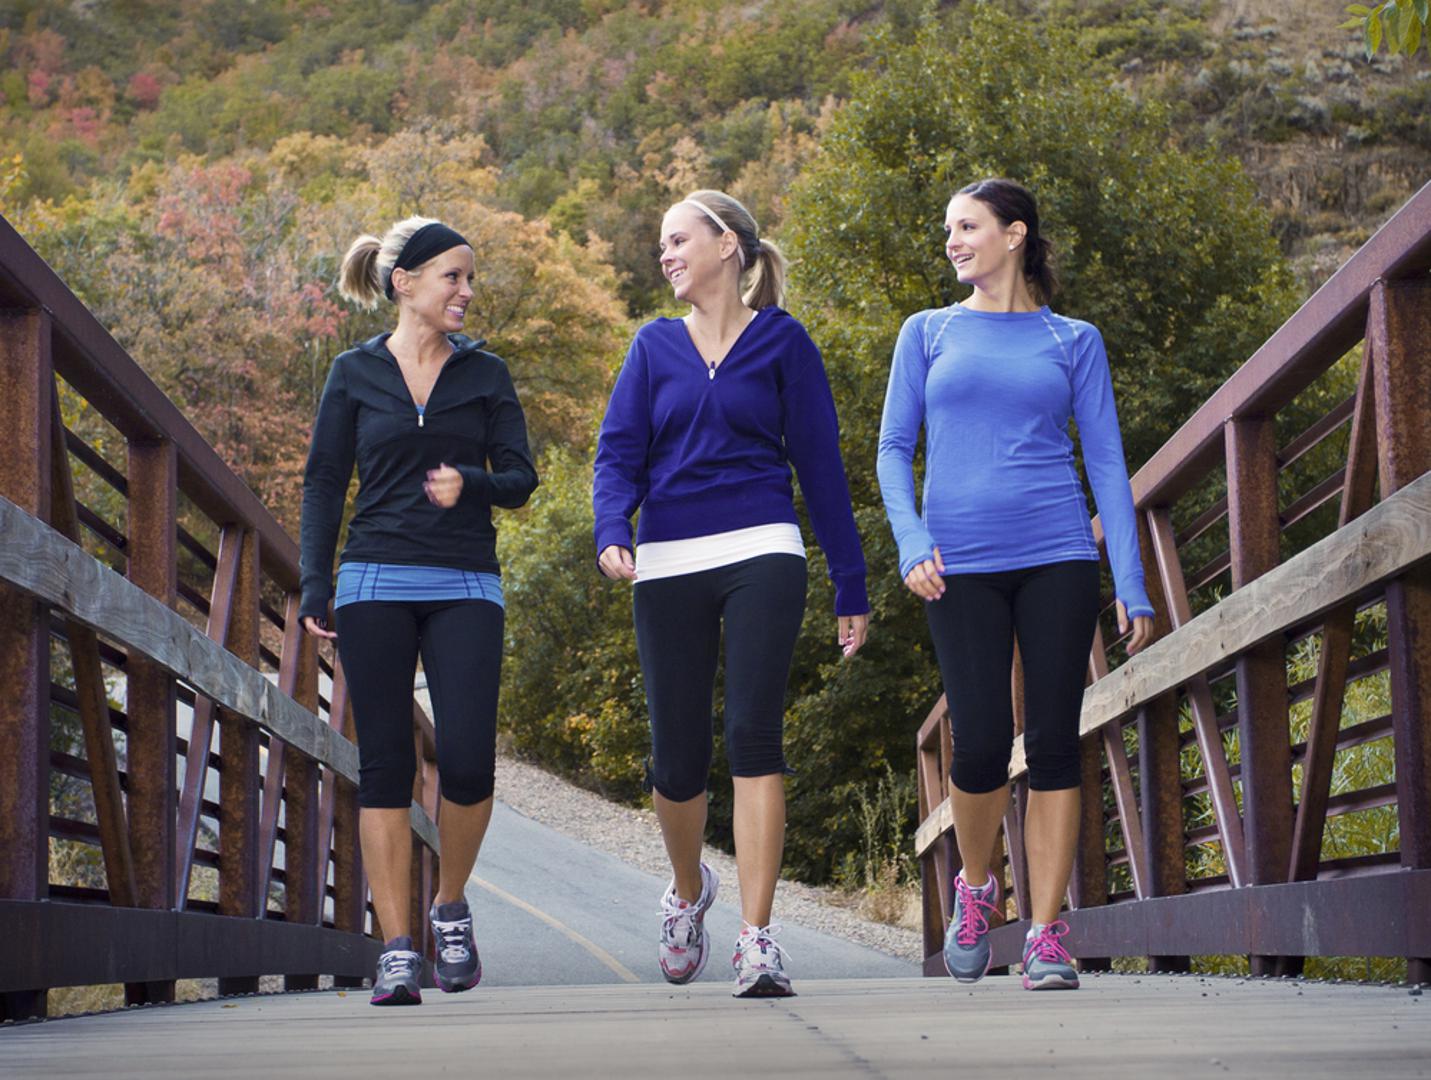 Izađite van – Više hodanja, manje sjedenja, ključna je stvar za održavanje jetra zdravima.